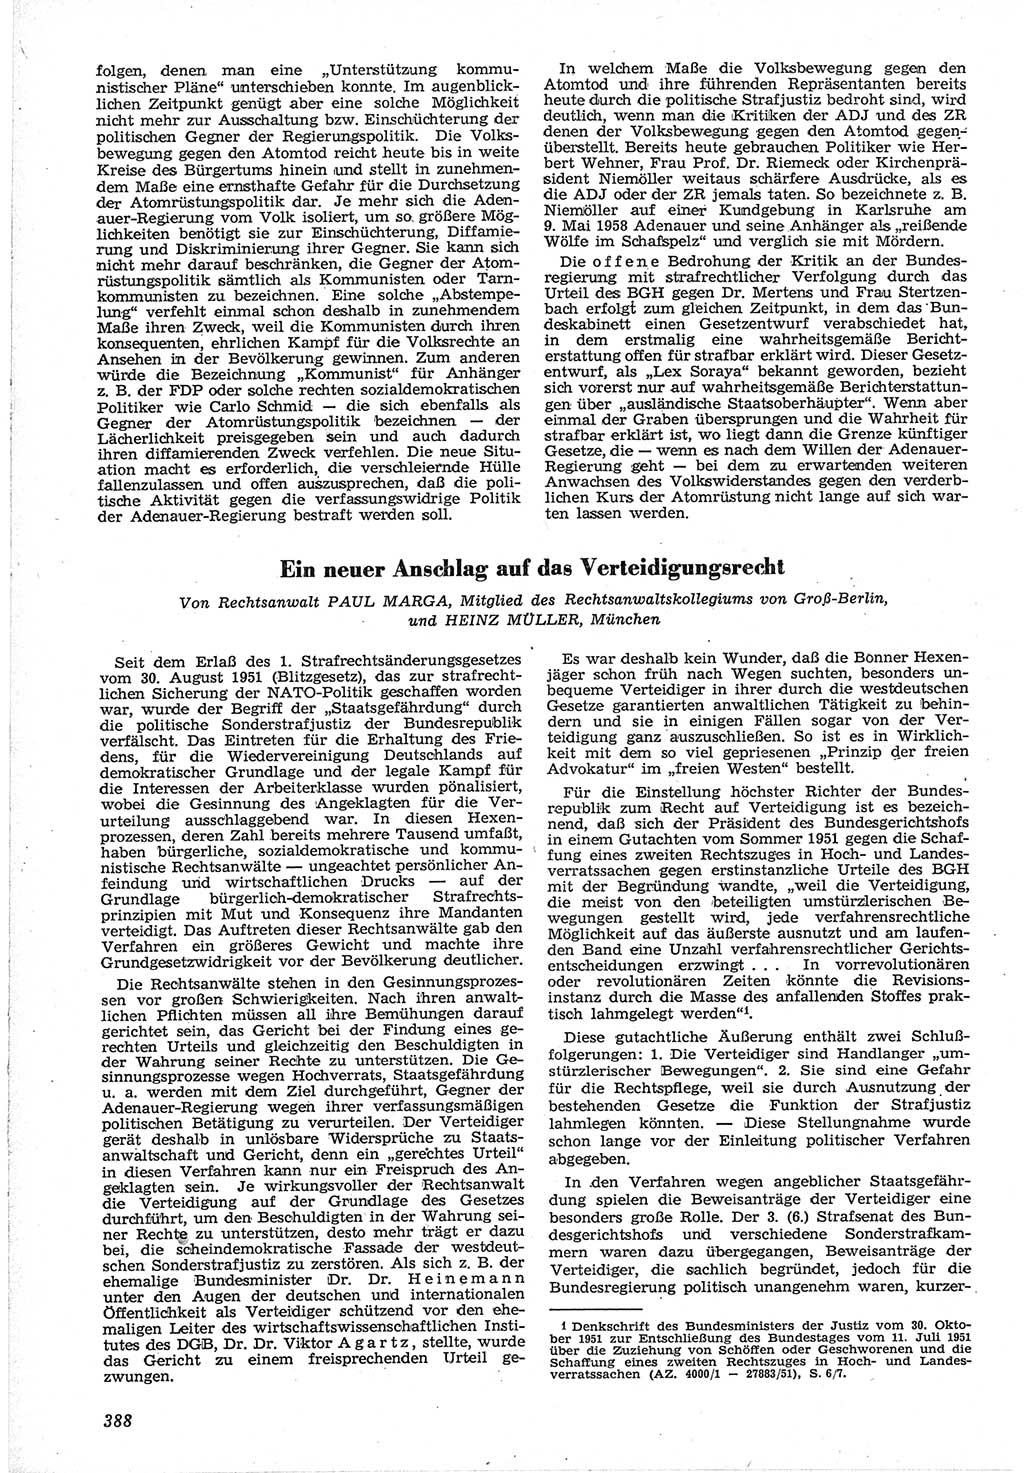 Neue Justiz (NJ), Zeitschrift für Recht und Rechtswissenschaft [Deutsche Demokratische Republik (DDR)], 12. Jahrgang 1958, Seite 388 (NJ DDR 1958, S. 388)